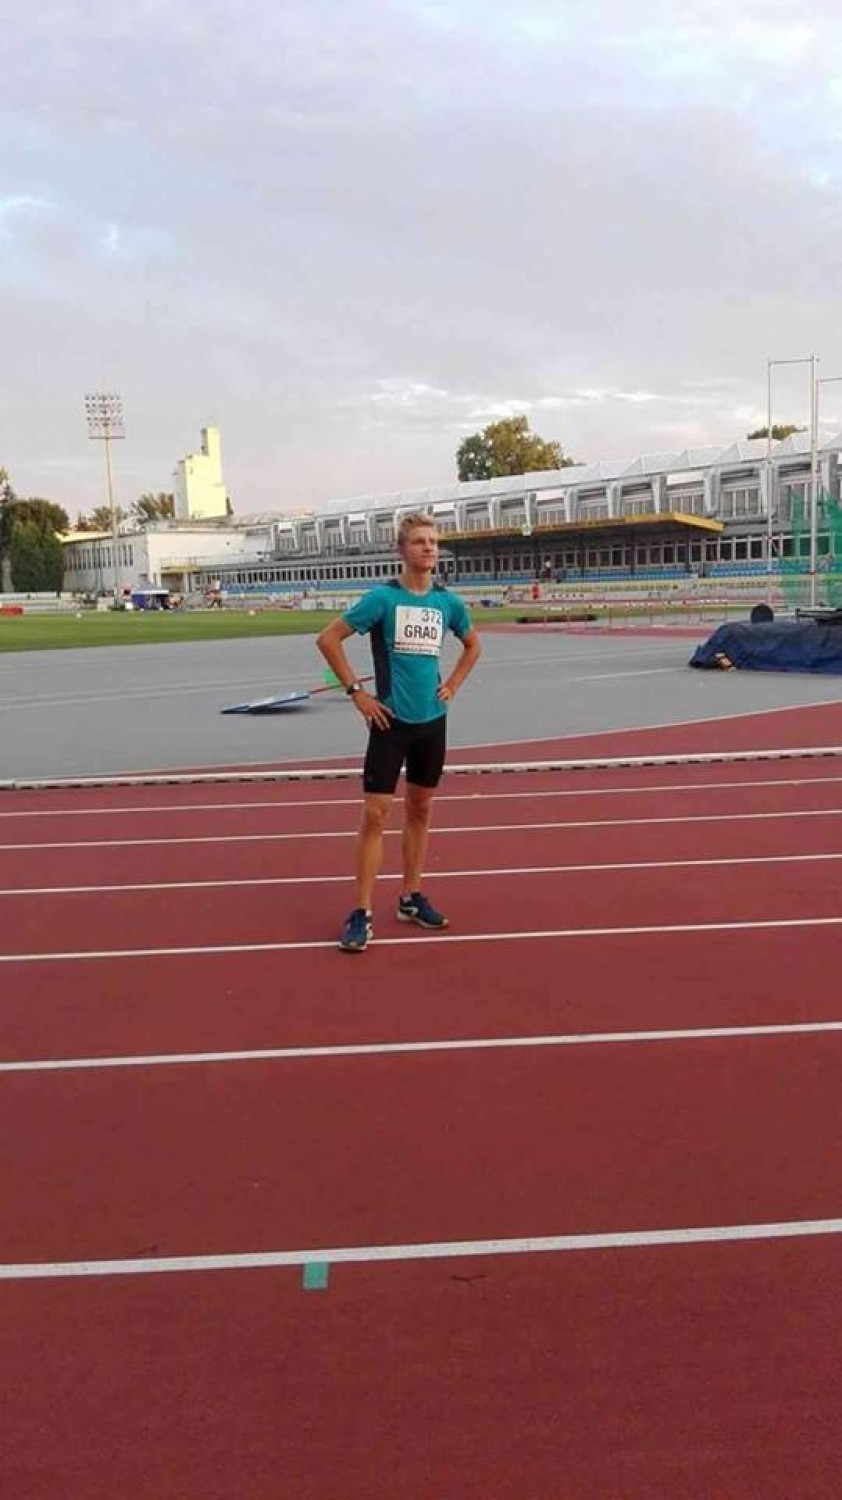 Filip Grad zdobył piętnaste miejsce na Ogólnopolskiej Olimpiadzie Młodzieży